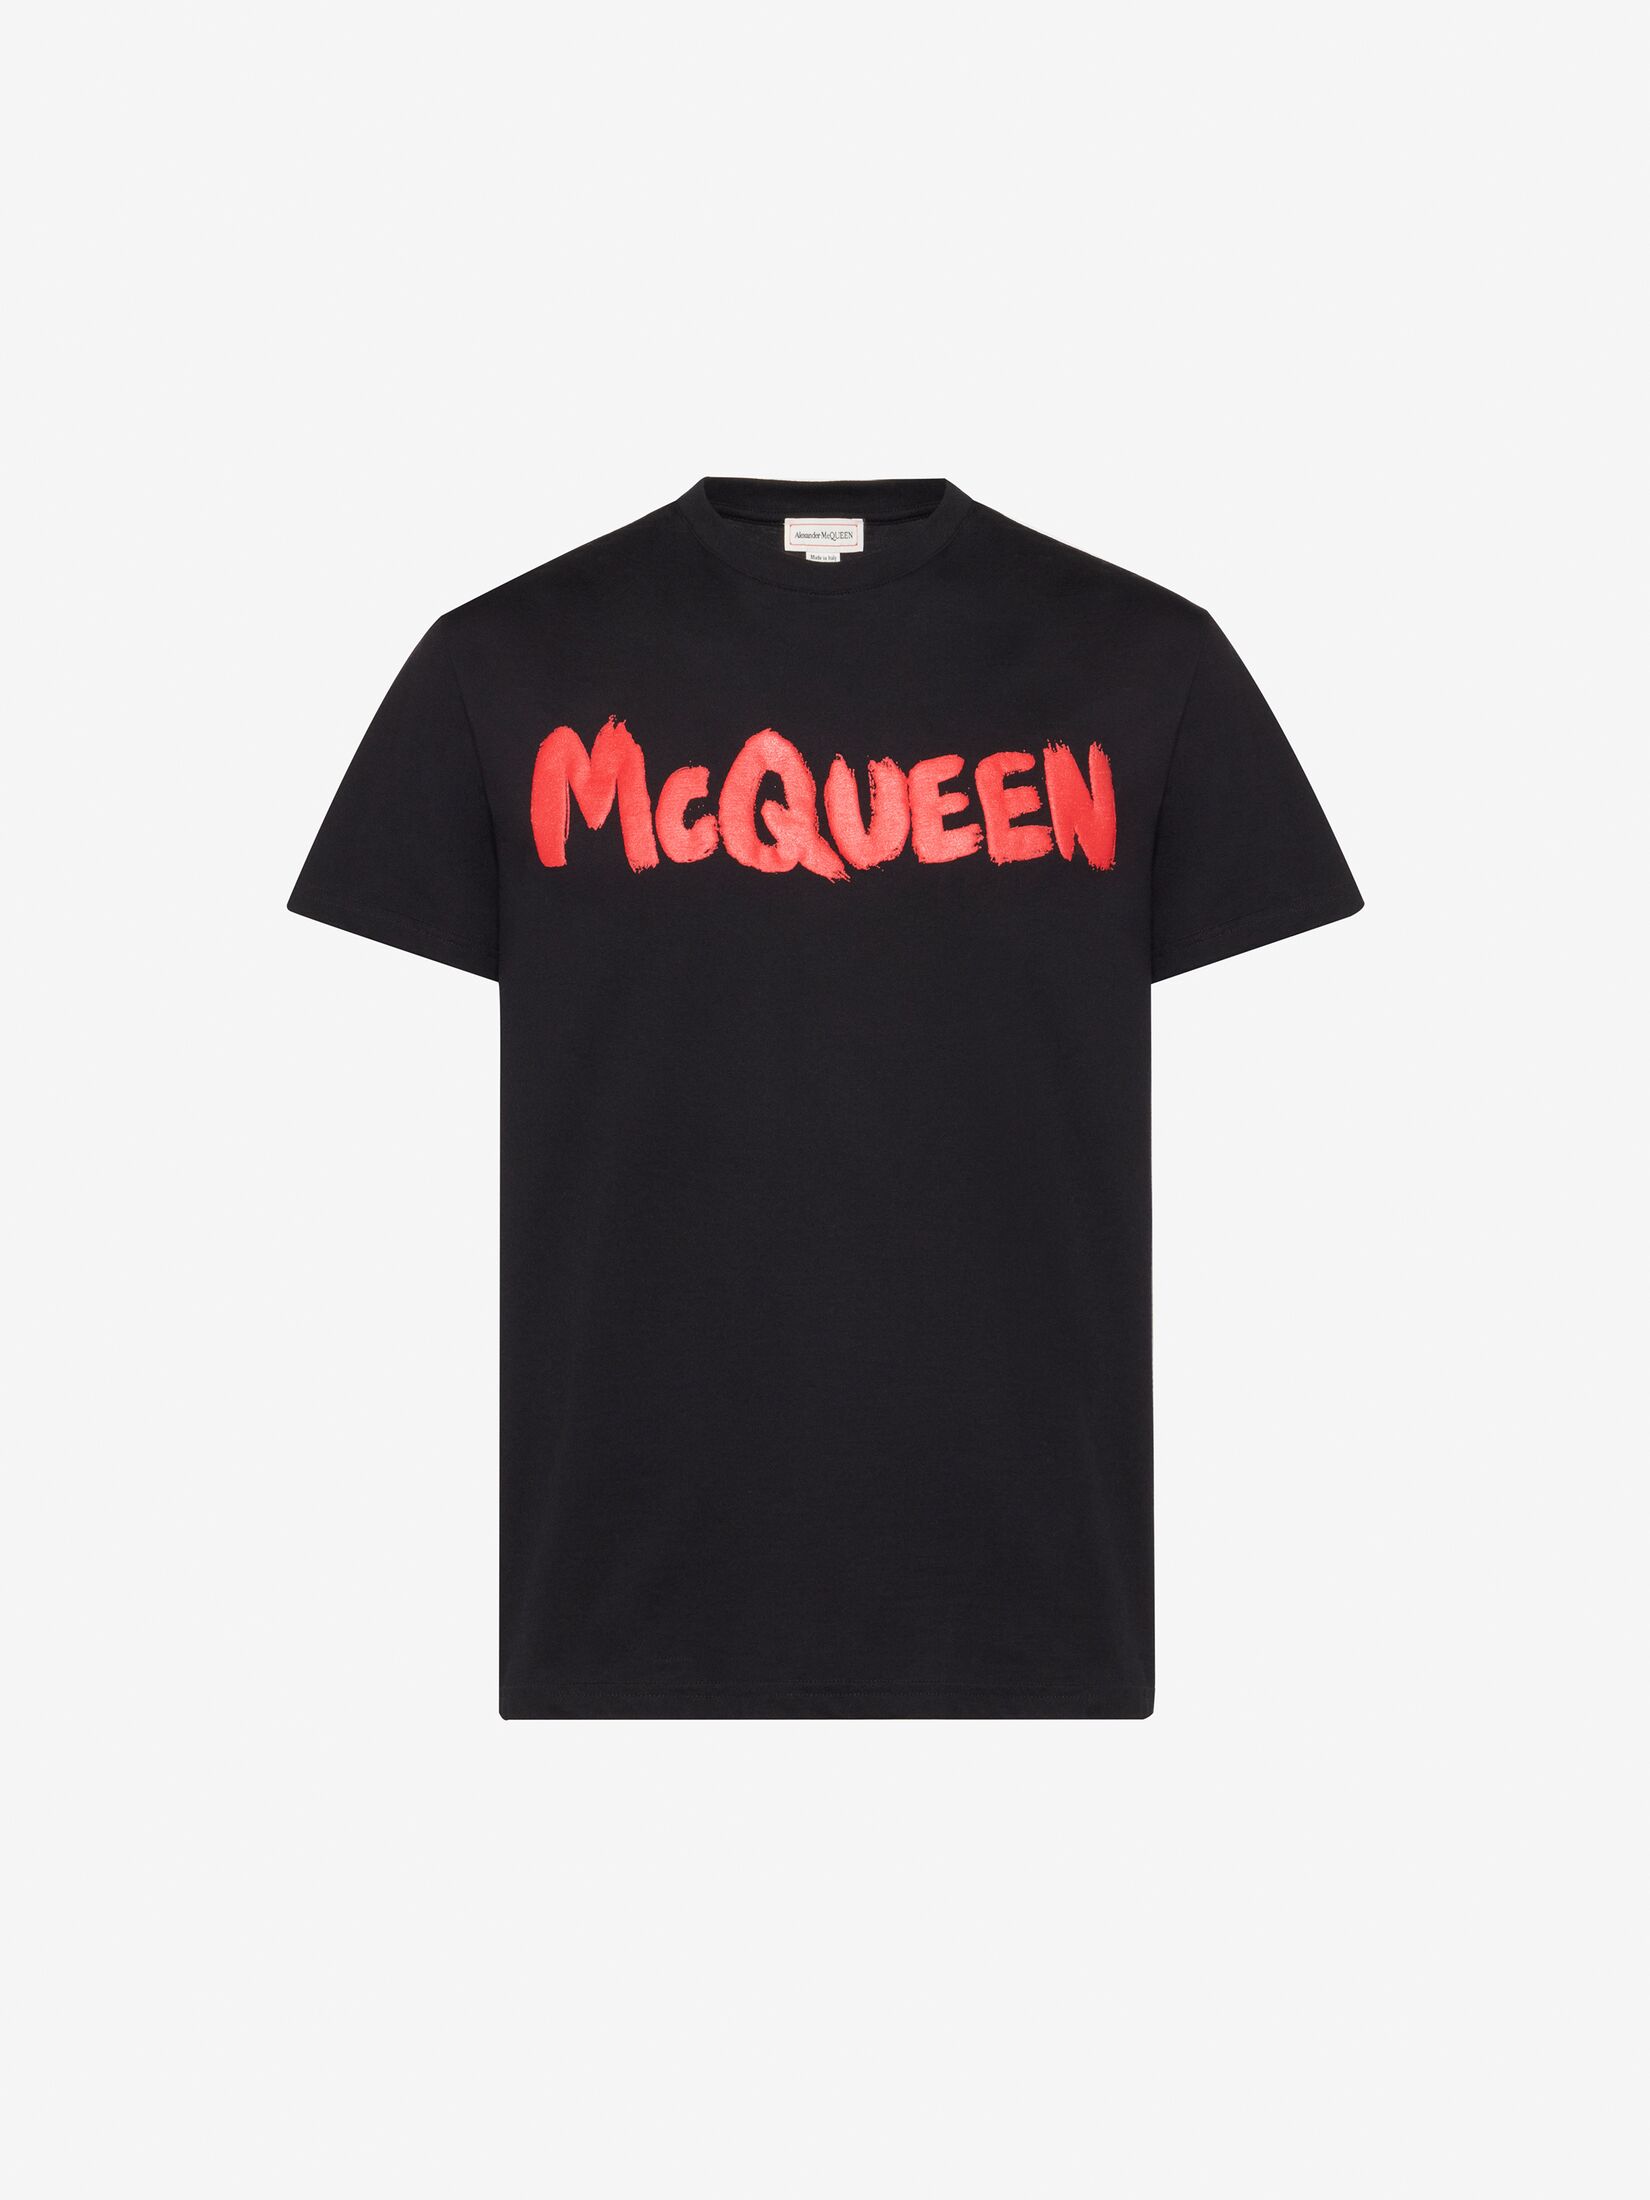 McQueenグラフィティ Tシャツ | ブラック/レッド | Alexander McQueen JP